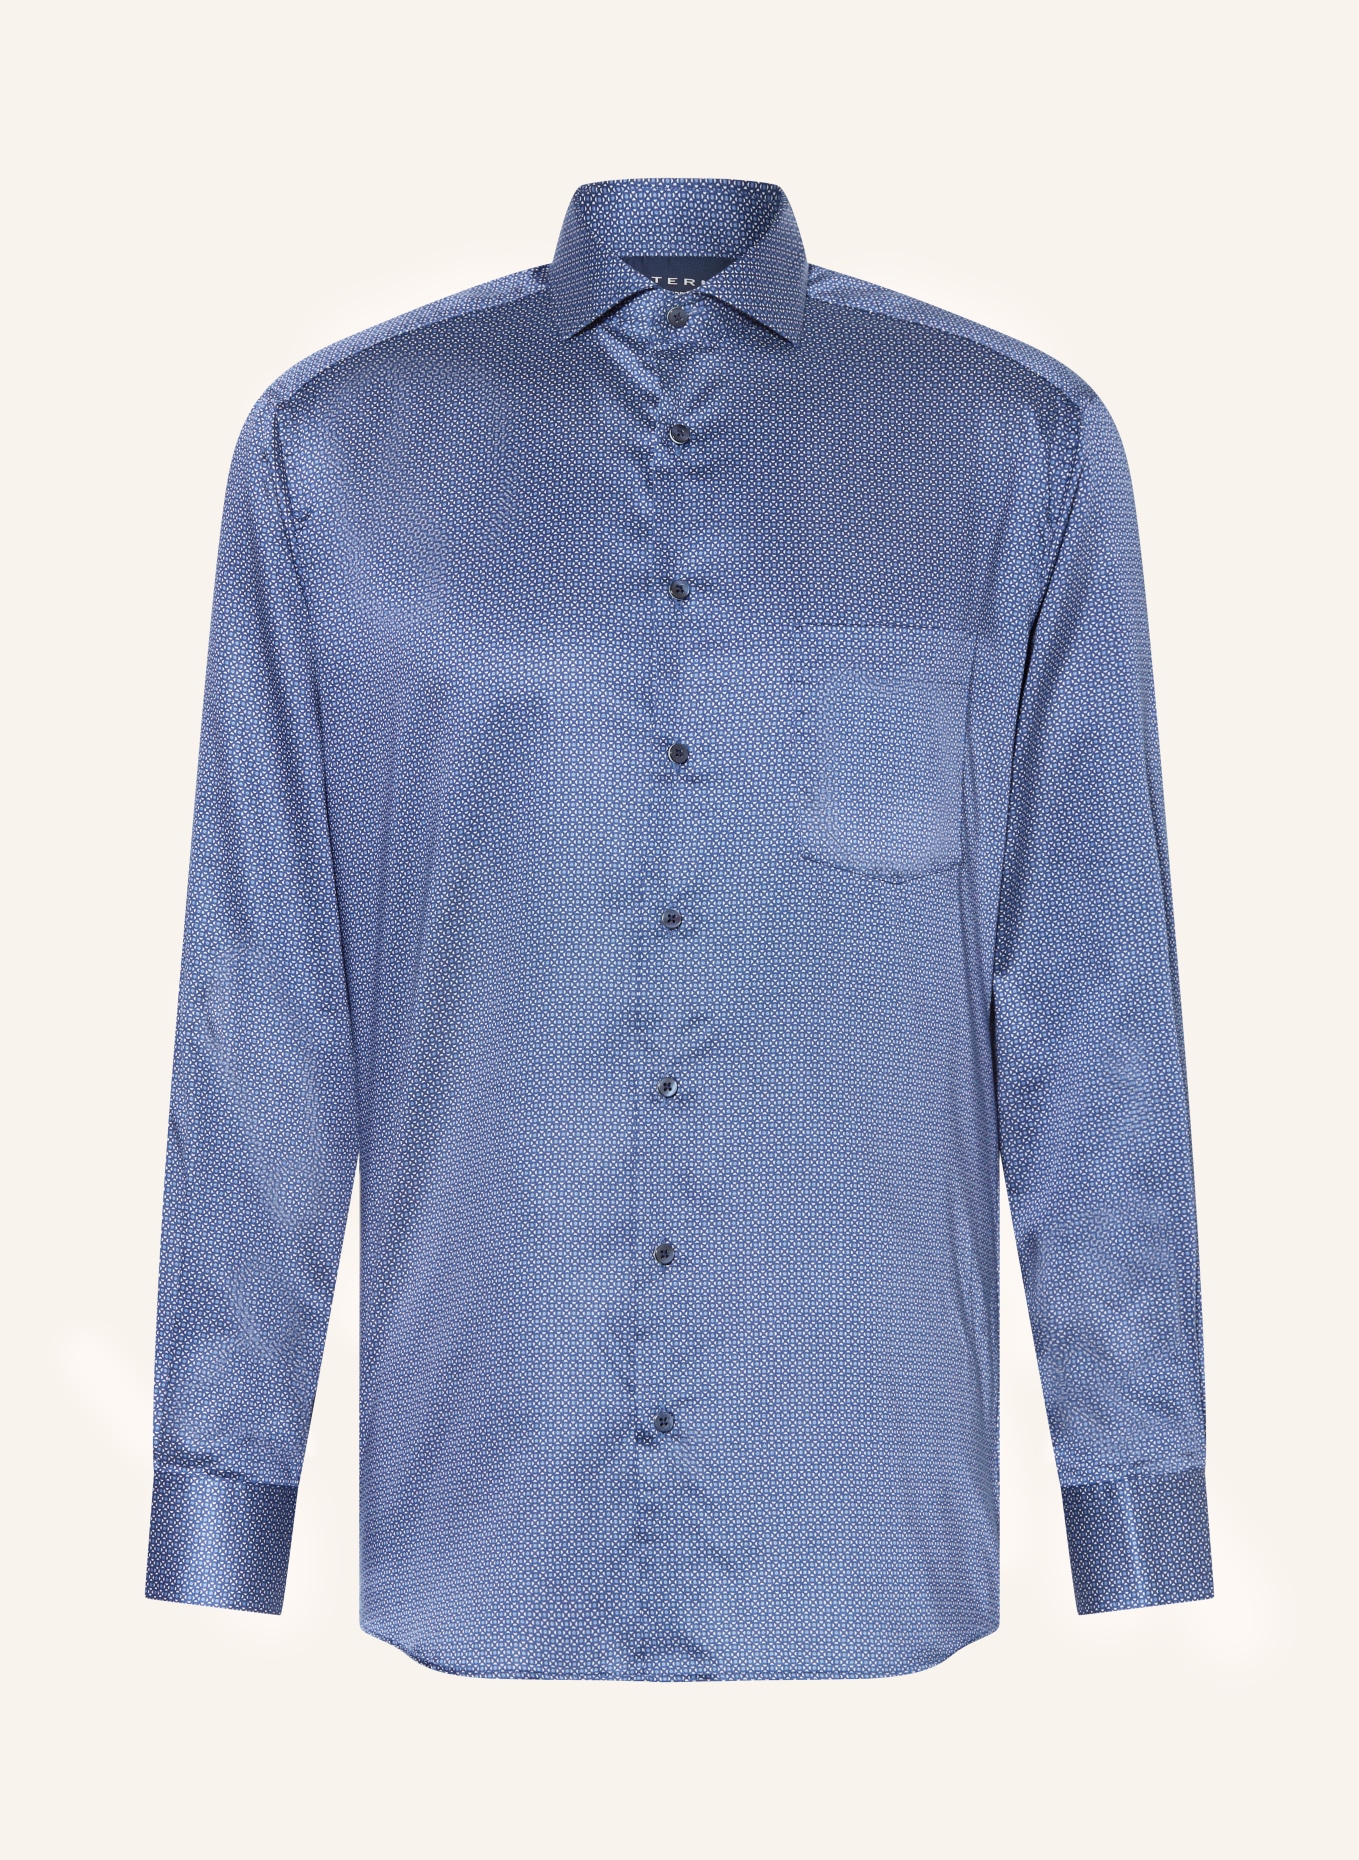 Shirt ETERNA blue/ modern in fit white blue/ dark